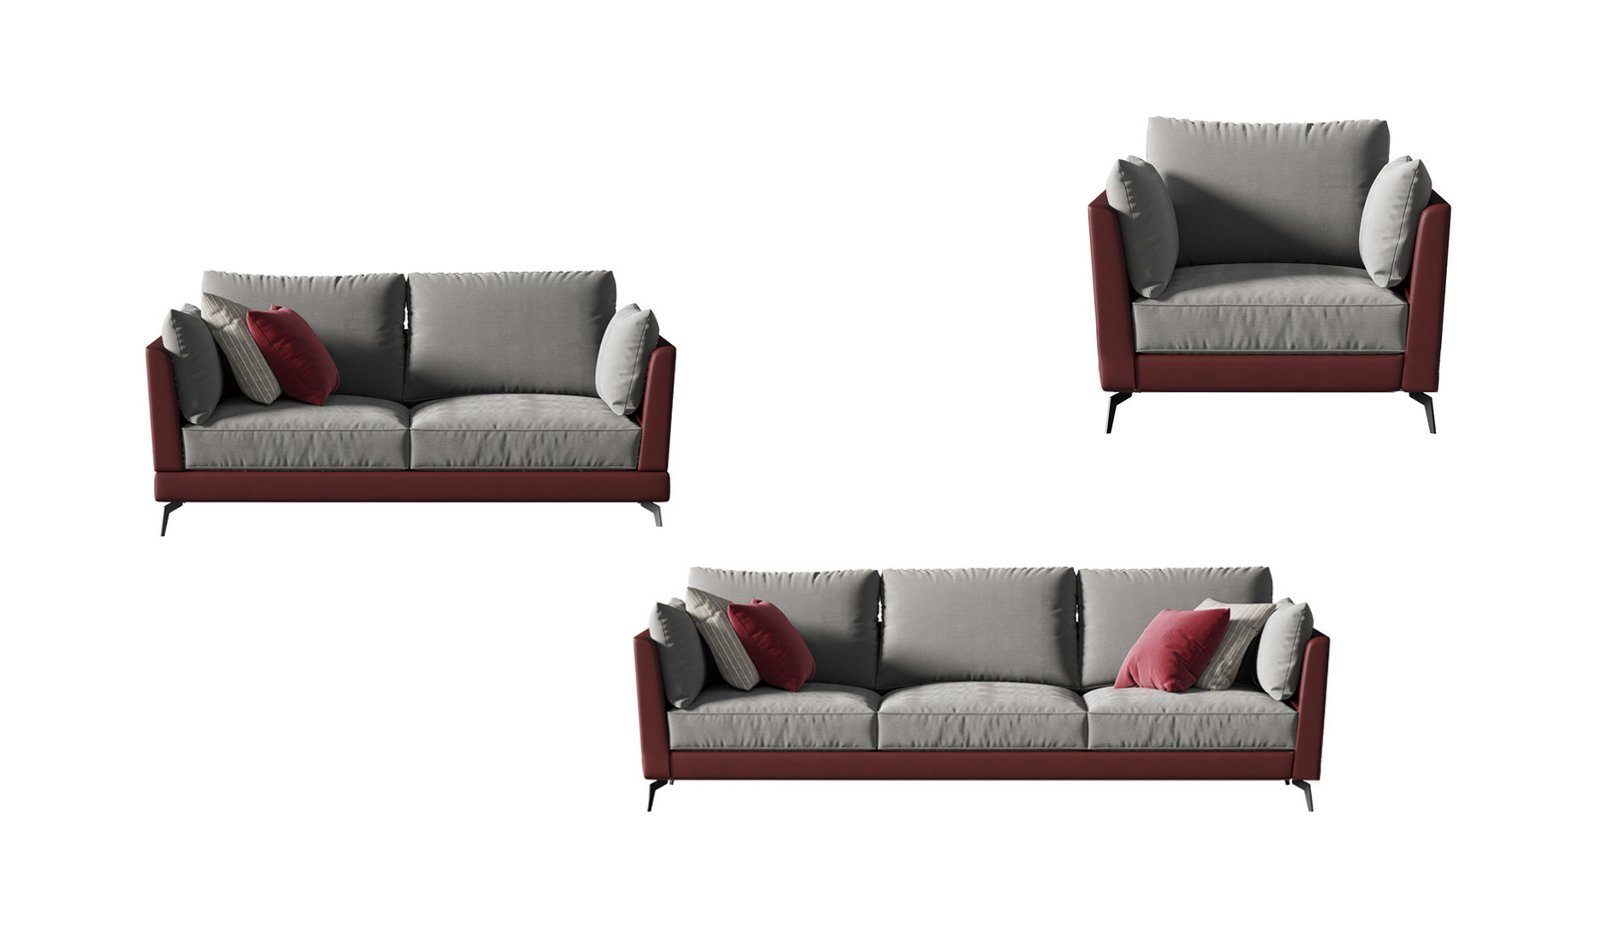 JVmoebel Sofa Sofagarnitur 3+2+1 Sitzer Stoff Textil Wohnlandschaft Sofas, Made in Europe